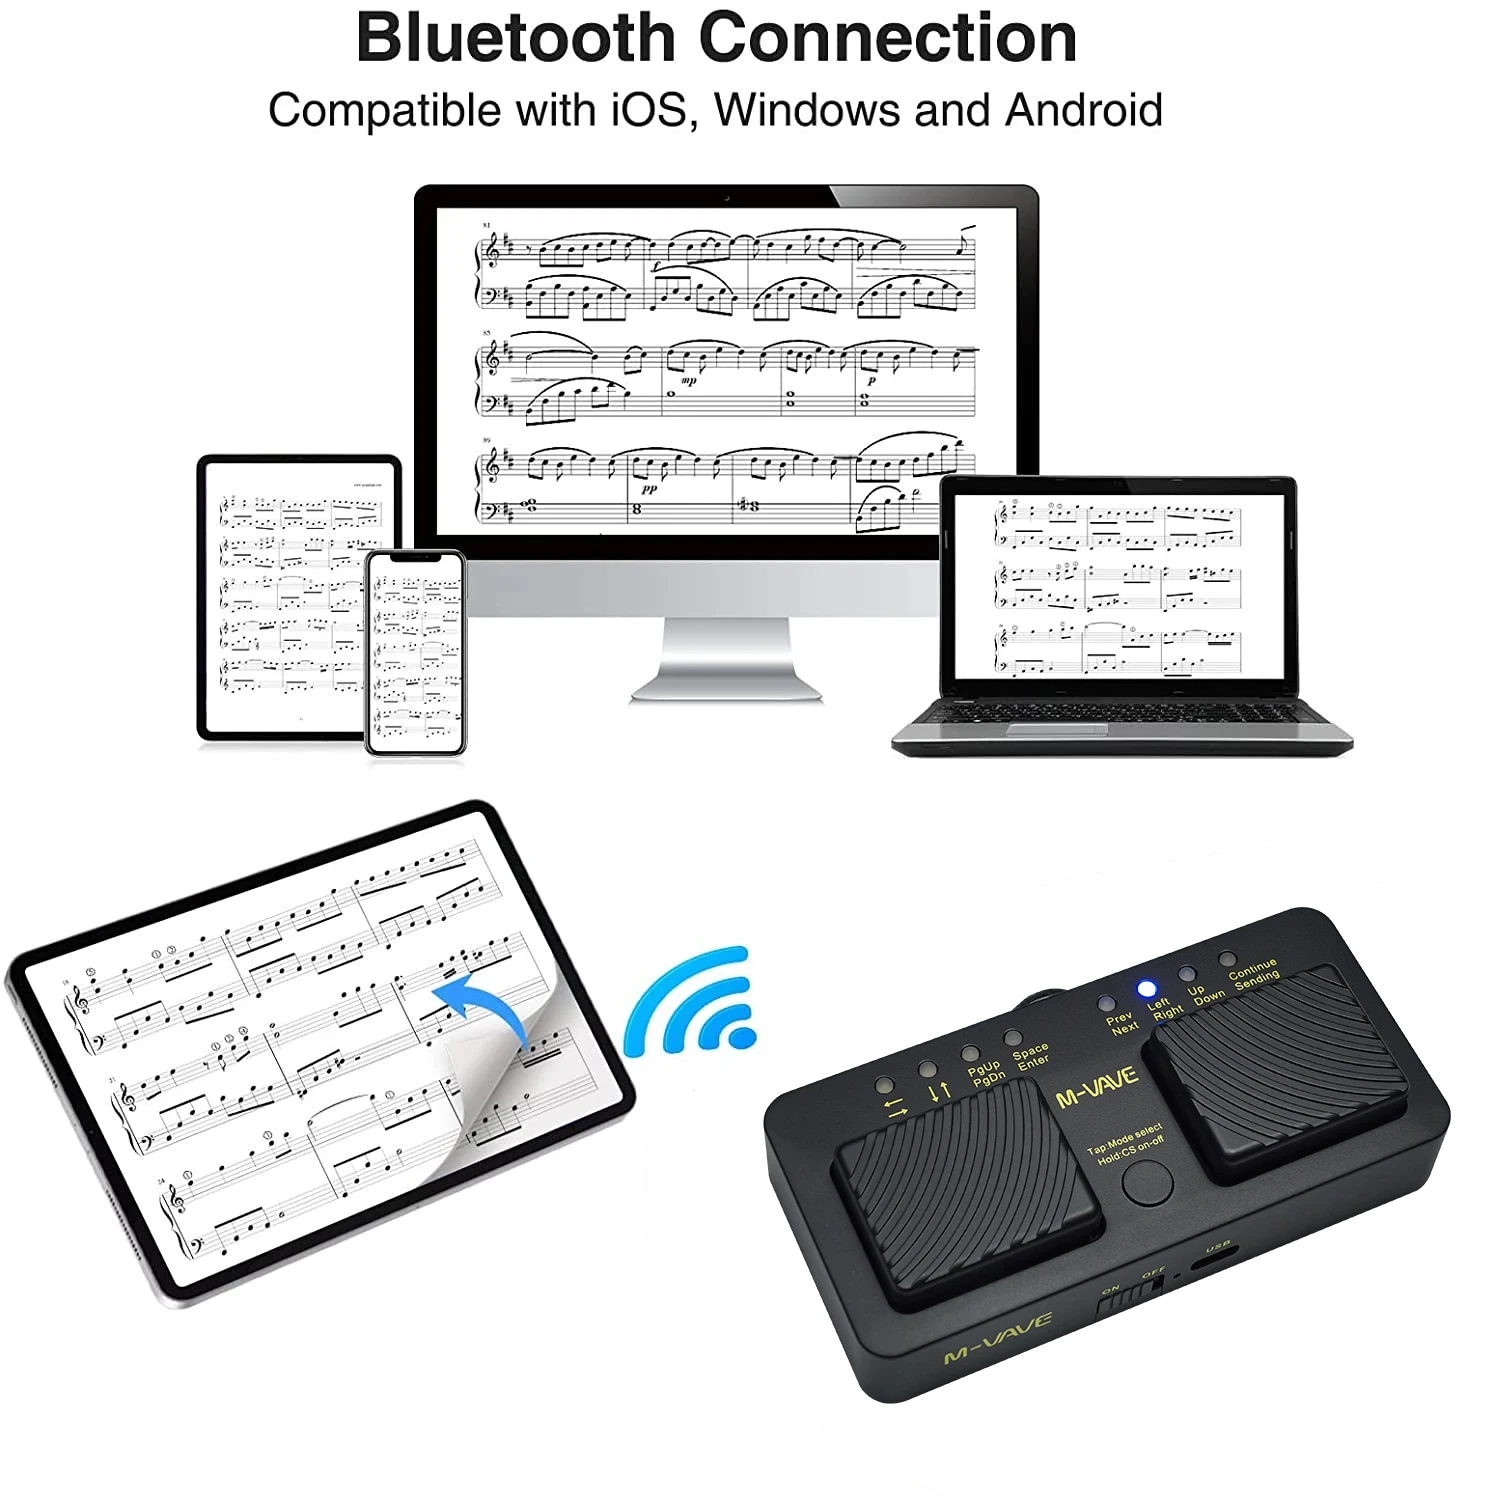 Cubo de M-VAVE inalámbrico con Bluetooth, Pedal silencioso, recargable por USB, para iPad, iPhone, tableta, teléfono inteligente